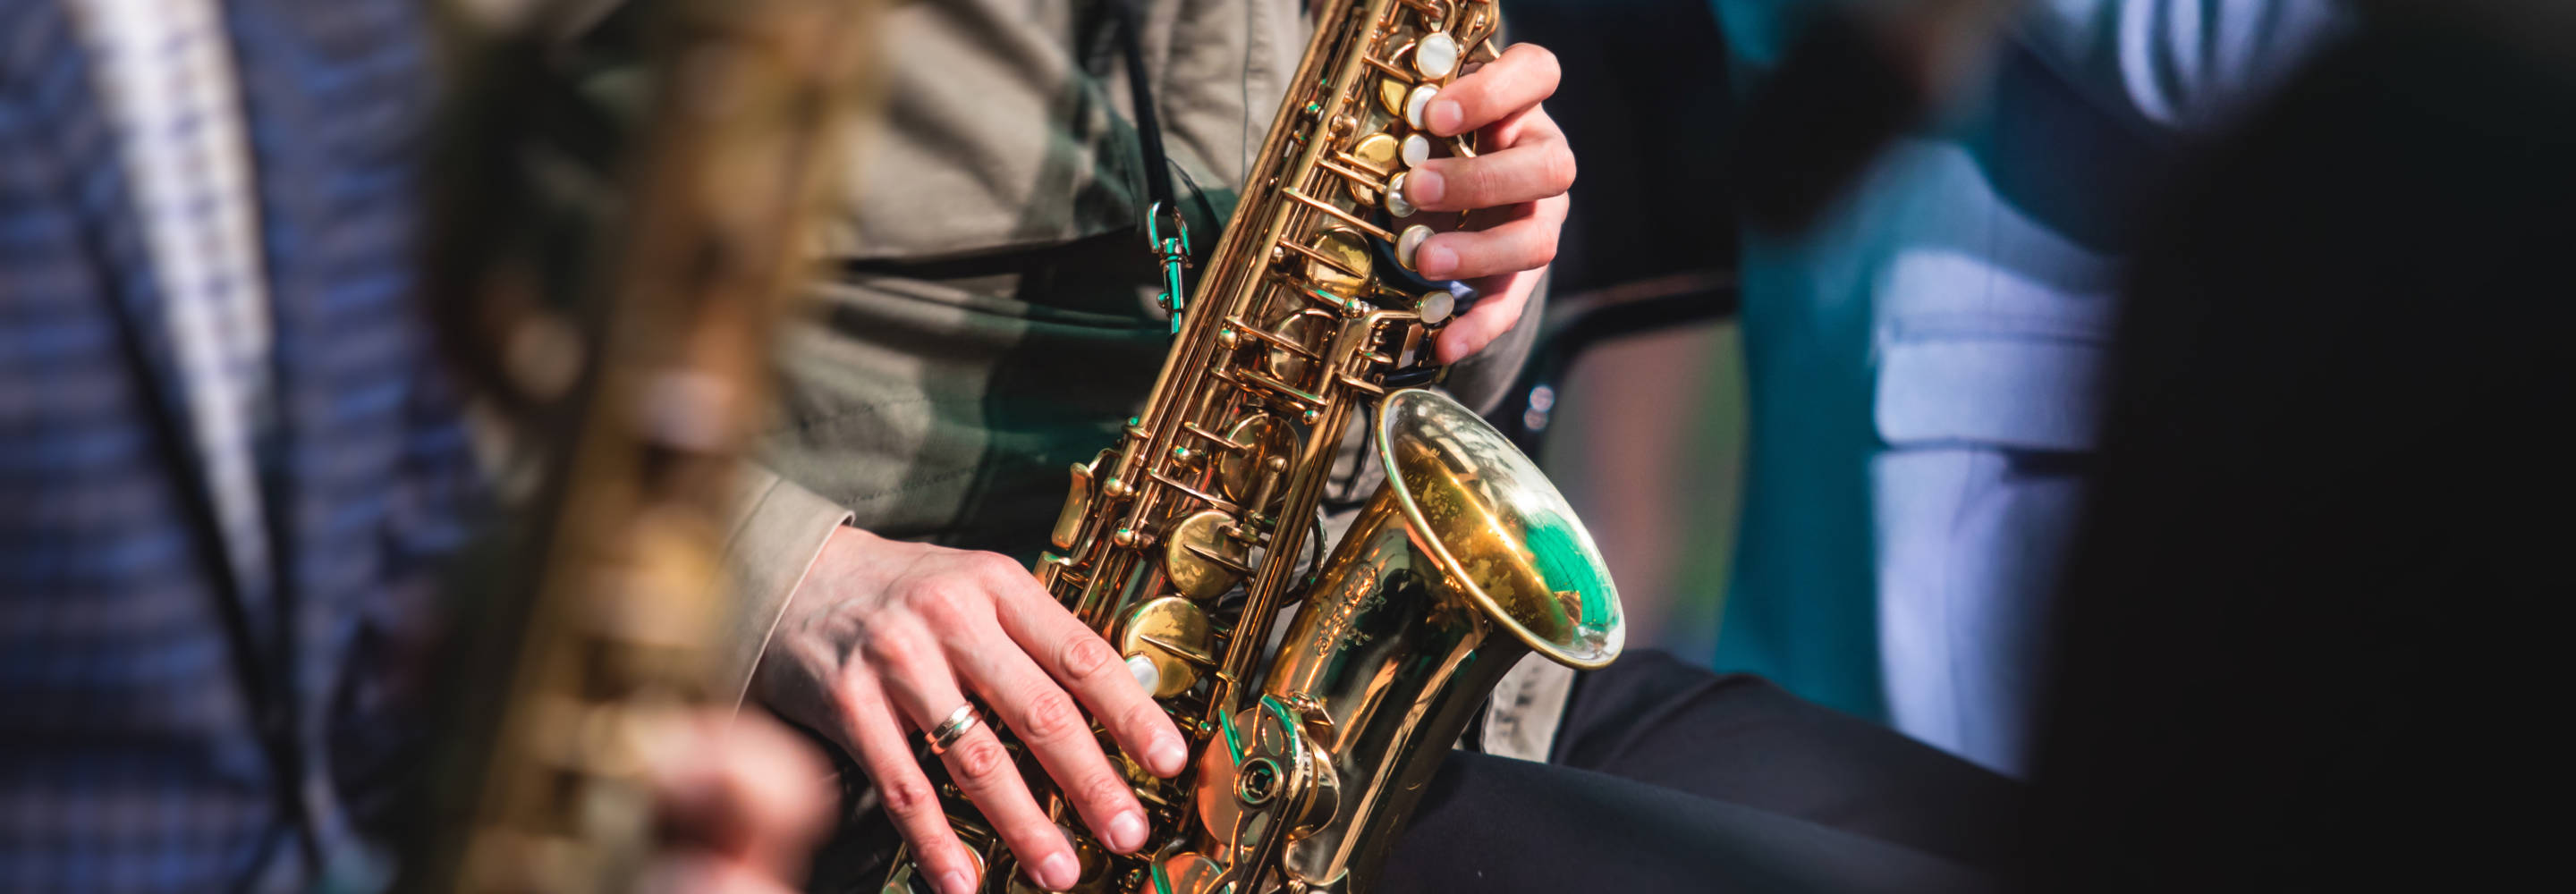 Kuvassa näkyy saksofoninsoittaja lähietäisyydeltä. Kuva rajautuu soittimen kohdalta niin, että soittajasta näkyvät vain kädet.